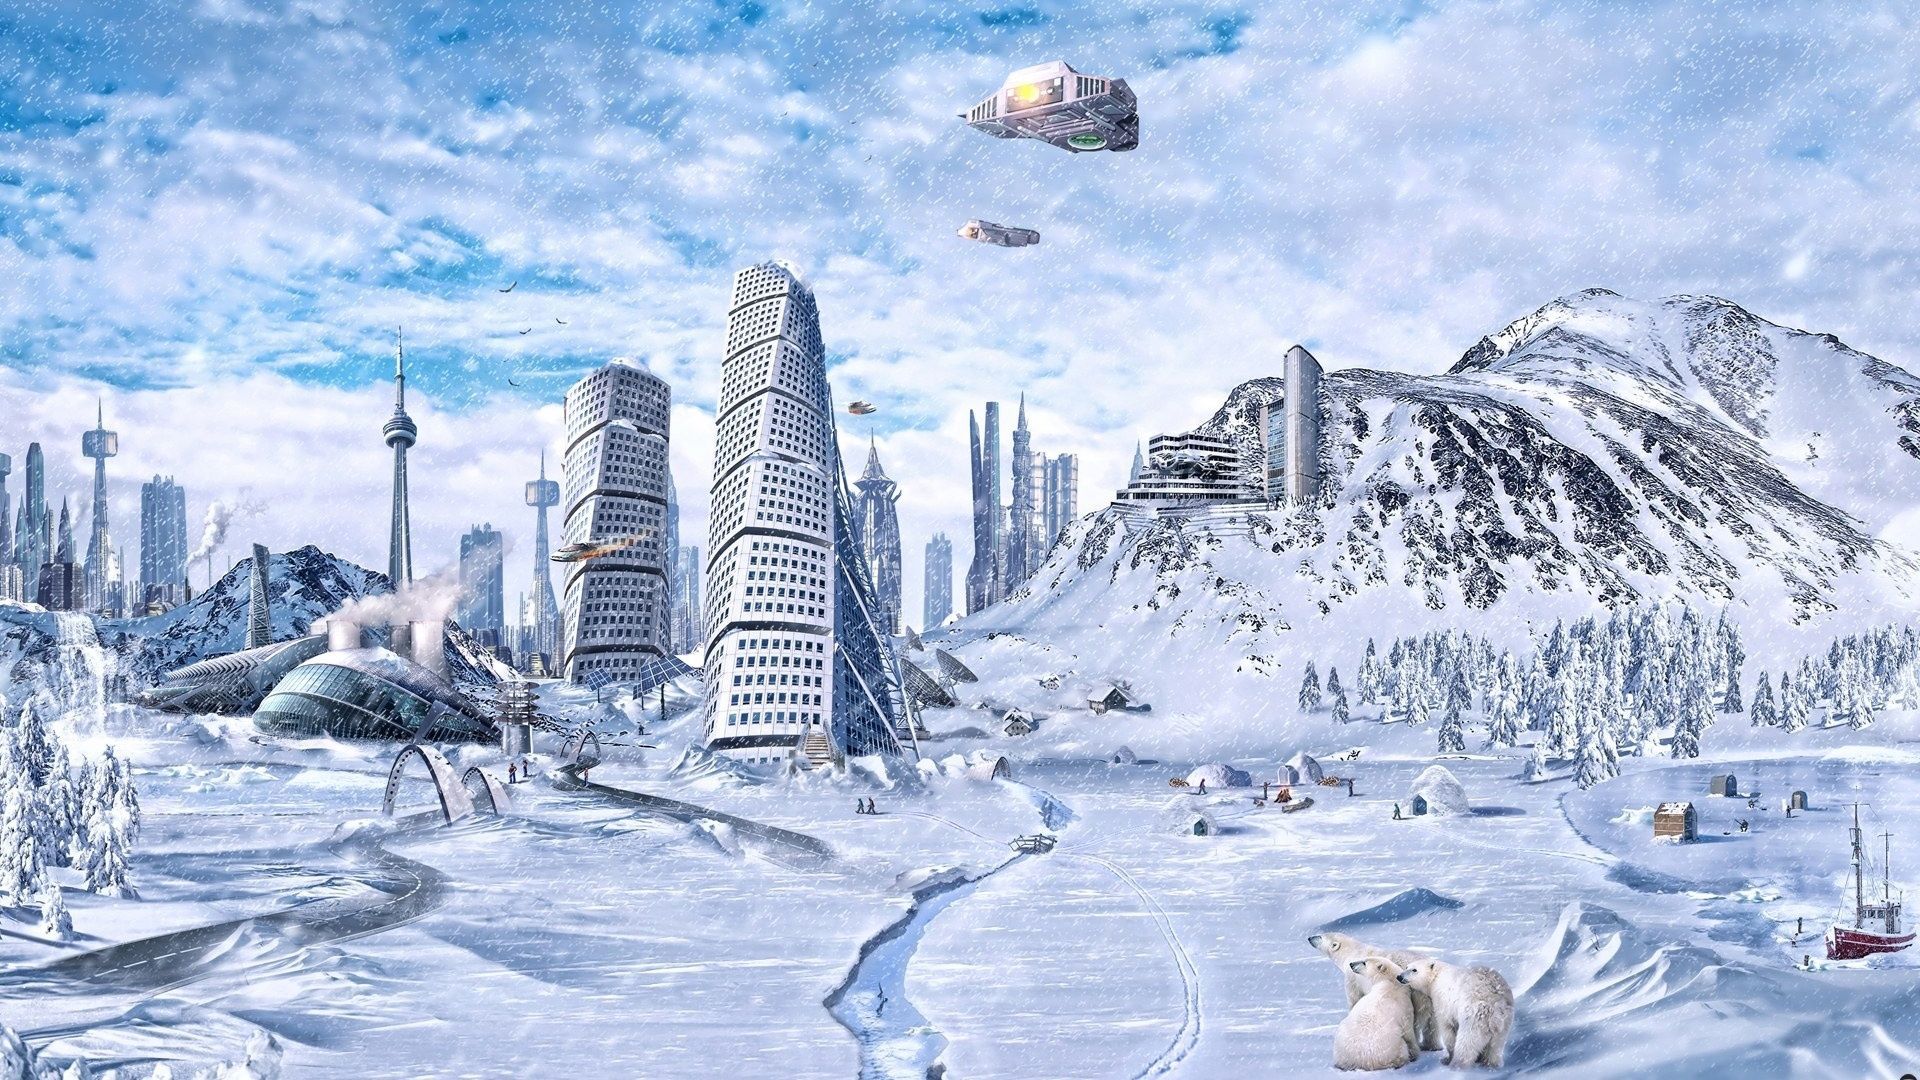 3D Landscape: Beautiful 3D Winter Fantasy, picture nr. 60689